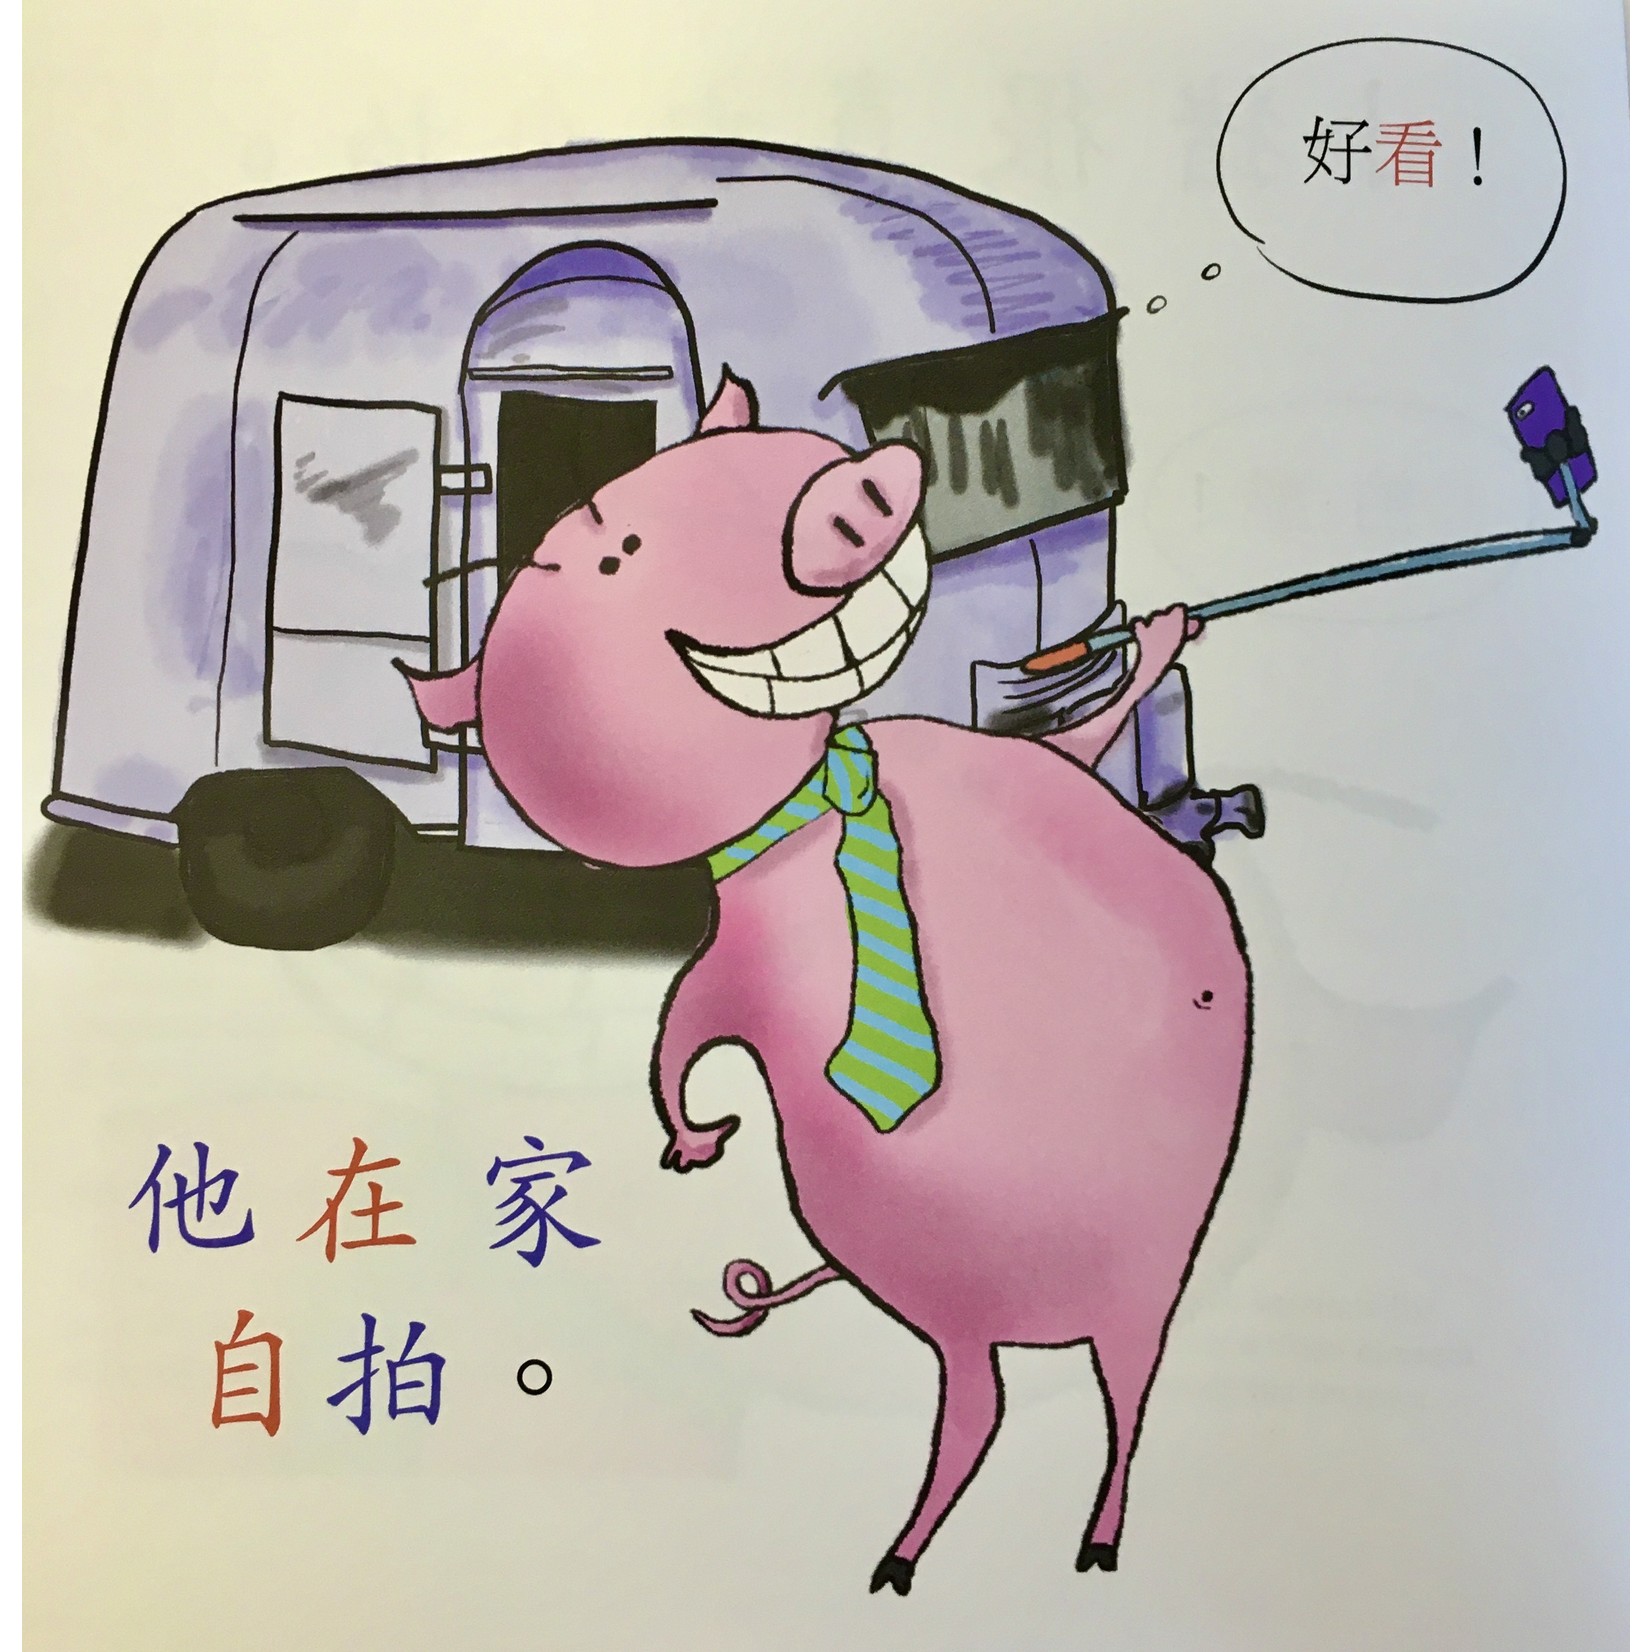 Squid for brains Pig takes selfies (Chinees - in vereenvoudigde karakters)